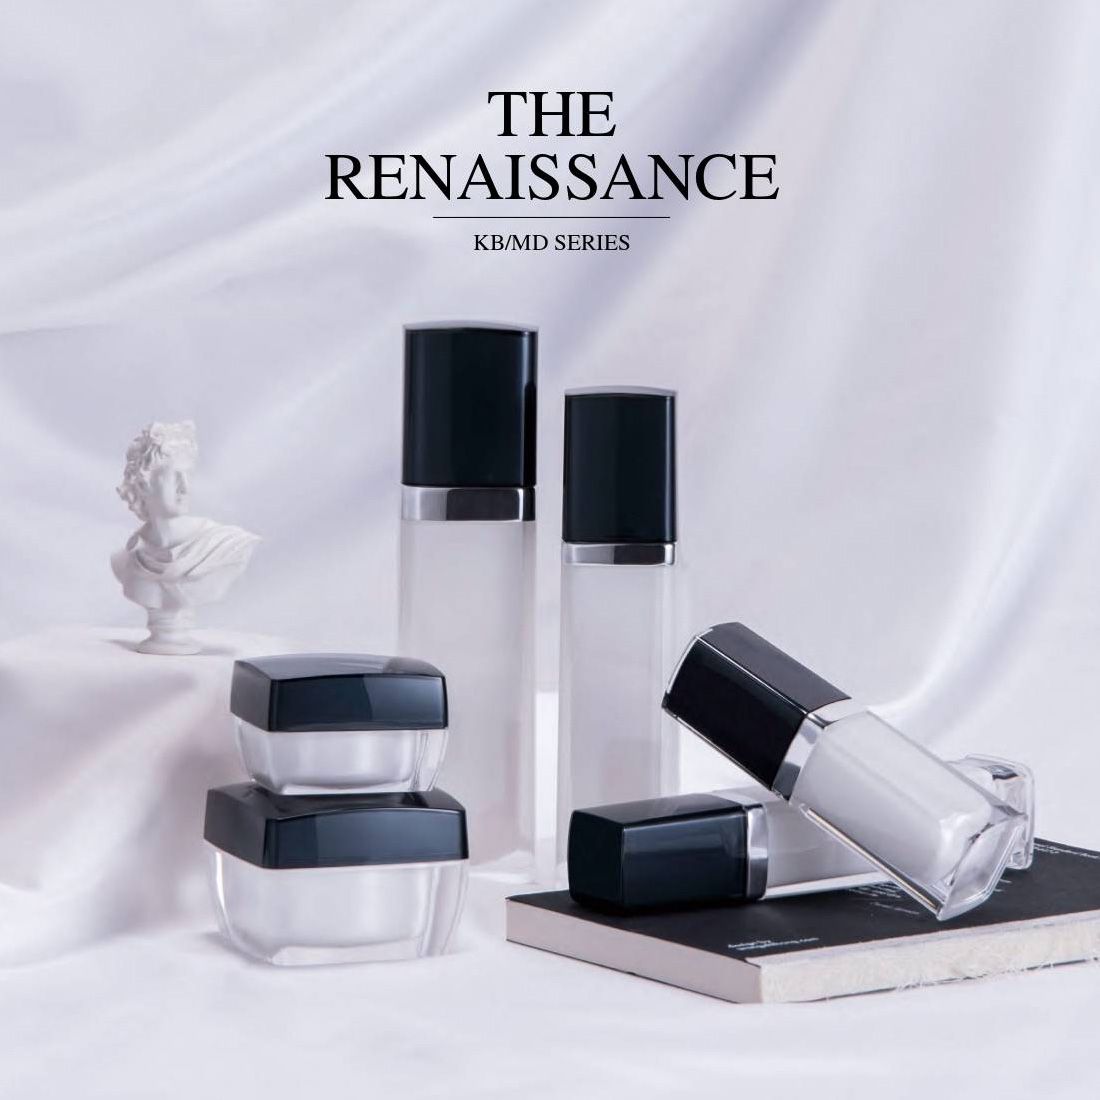 The Renaissance (Quadratische Luxus-Kosmetik- und Hautpflegeverpackung aus Acryl) KB/MD-Serie